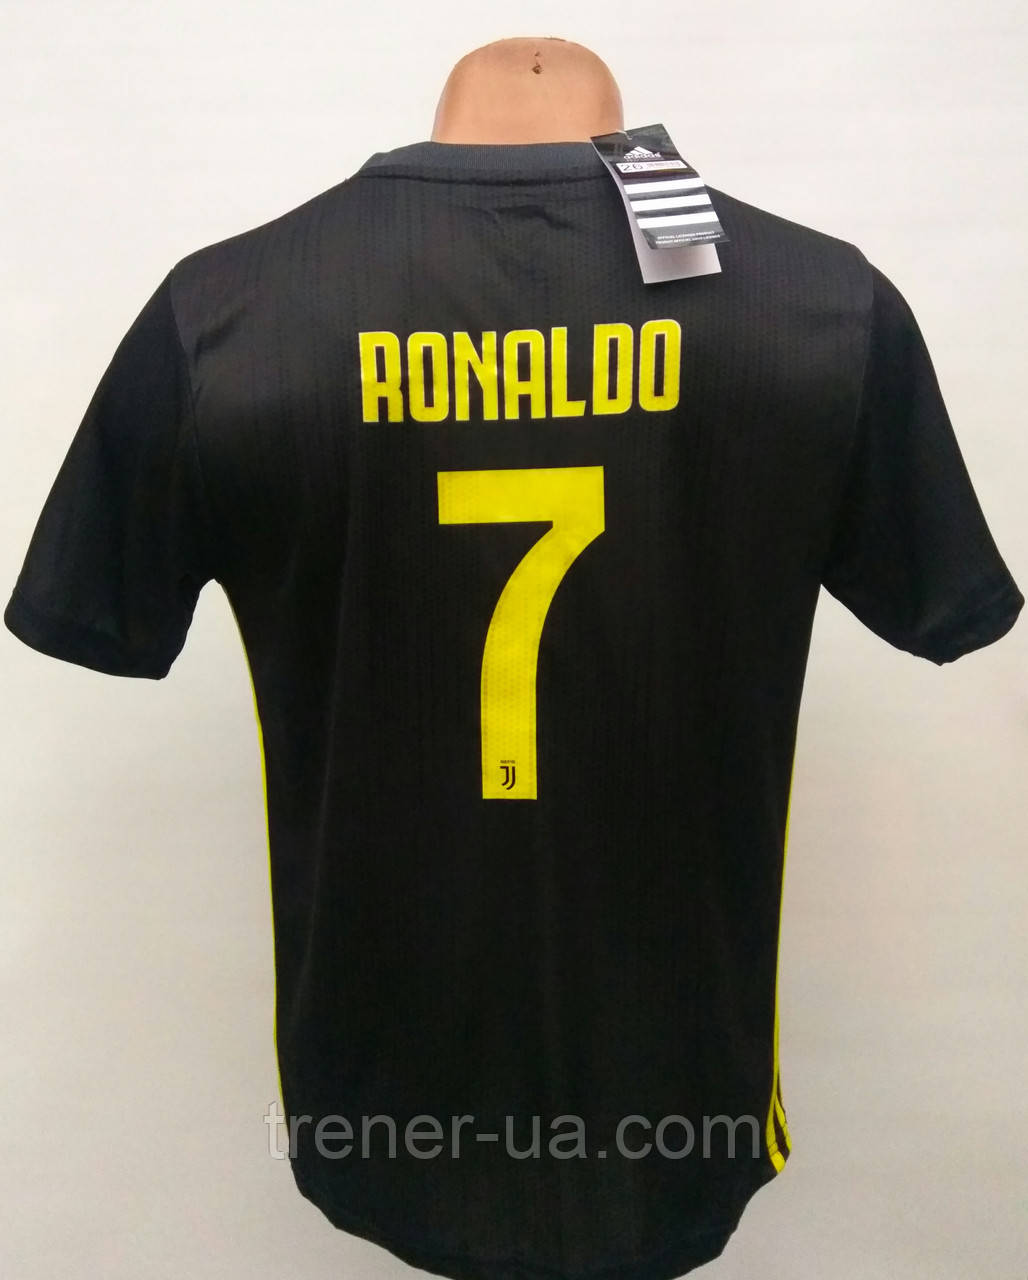 Розпродаж форми Ronaldo/уцінка форми 110-135 см у стилі Adidas Juventus Ronaldo/ Ювентус графіт/Юве